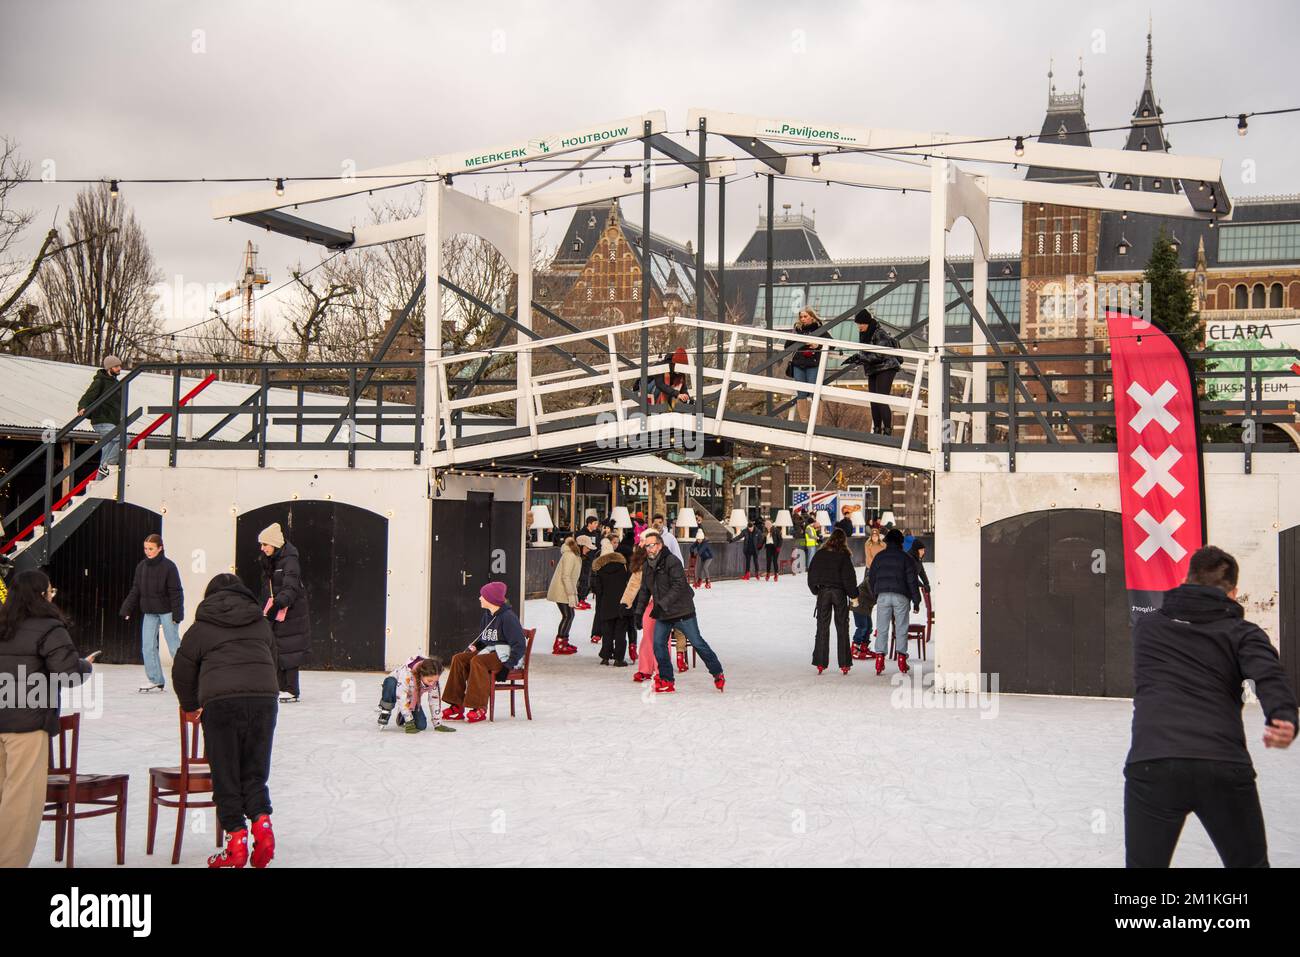 Ámsterdam, Países Bajos. 2022 de diciembre. La pista de patinaje sobre hielo de Museumplein en Ámsterdam. Fotografía de alta calidad Foto de stock